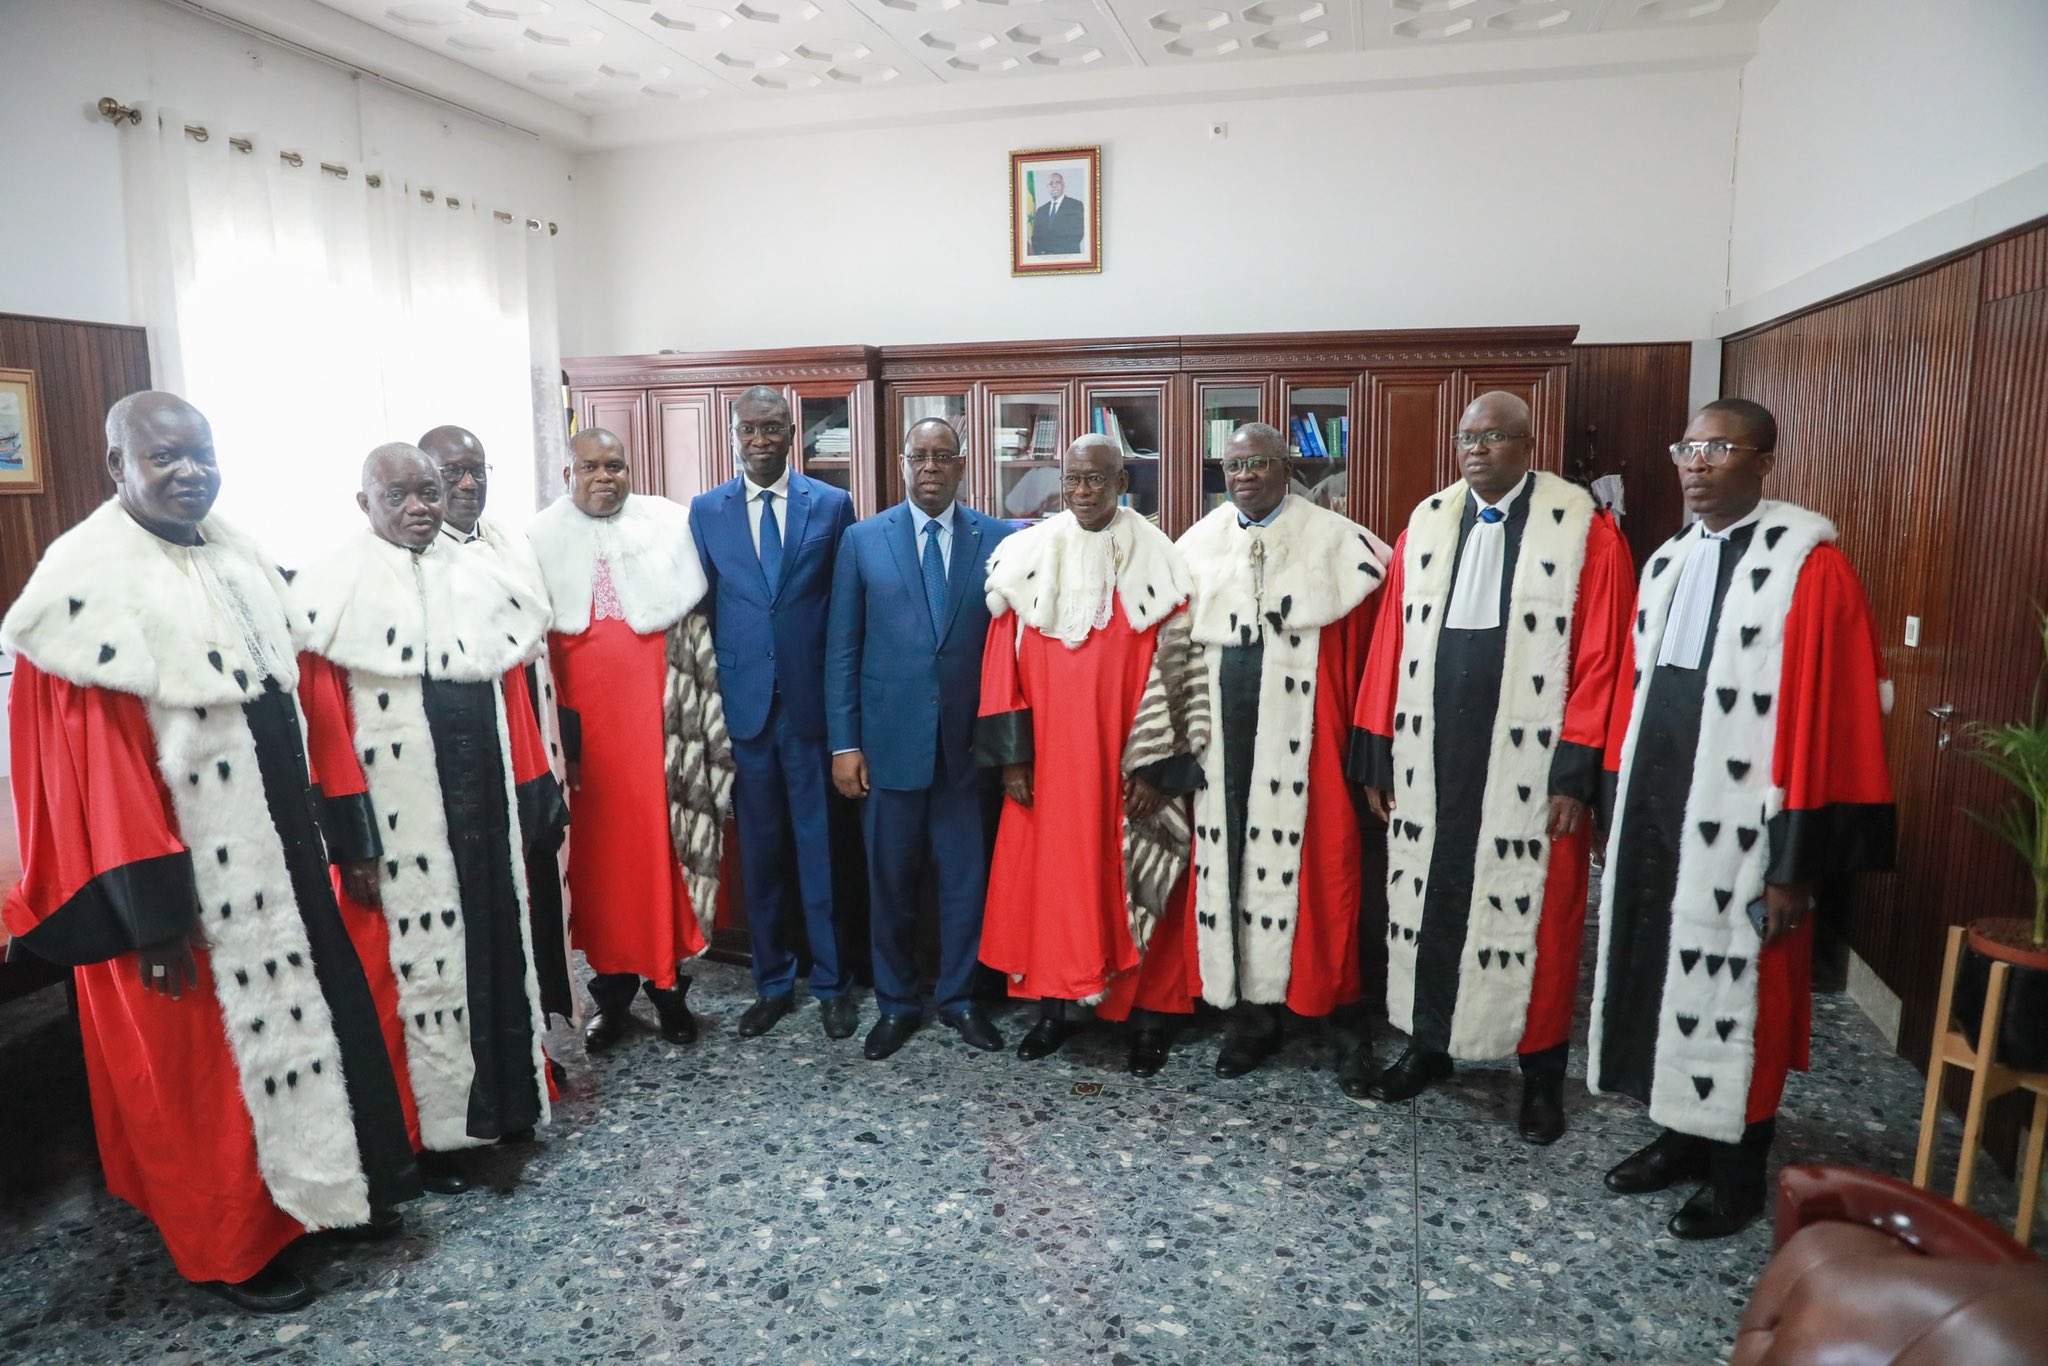 Le président sénégalais et son ministre de la Justice, en compagnie de hauts magistrats